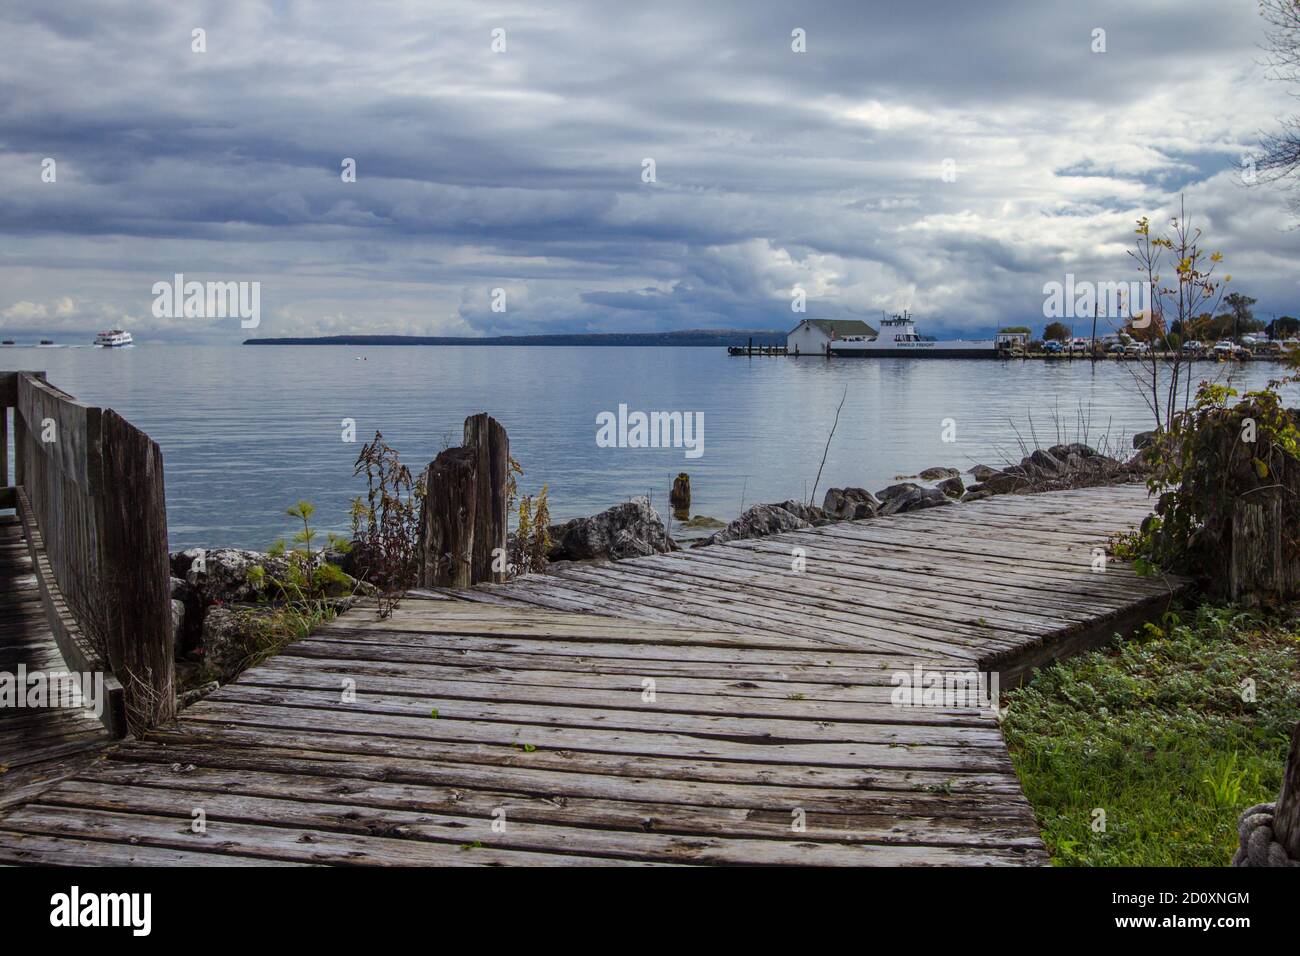 Città di St Ignace Boardwalk. Passerella in legno lungo la costa dei grandi Laghi del lago Huron, situata nel villaggio di St Ignace nella penisola superiore. Foto Stock